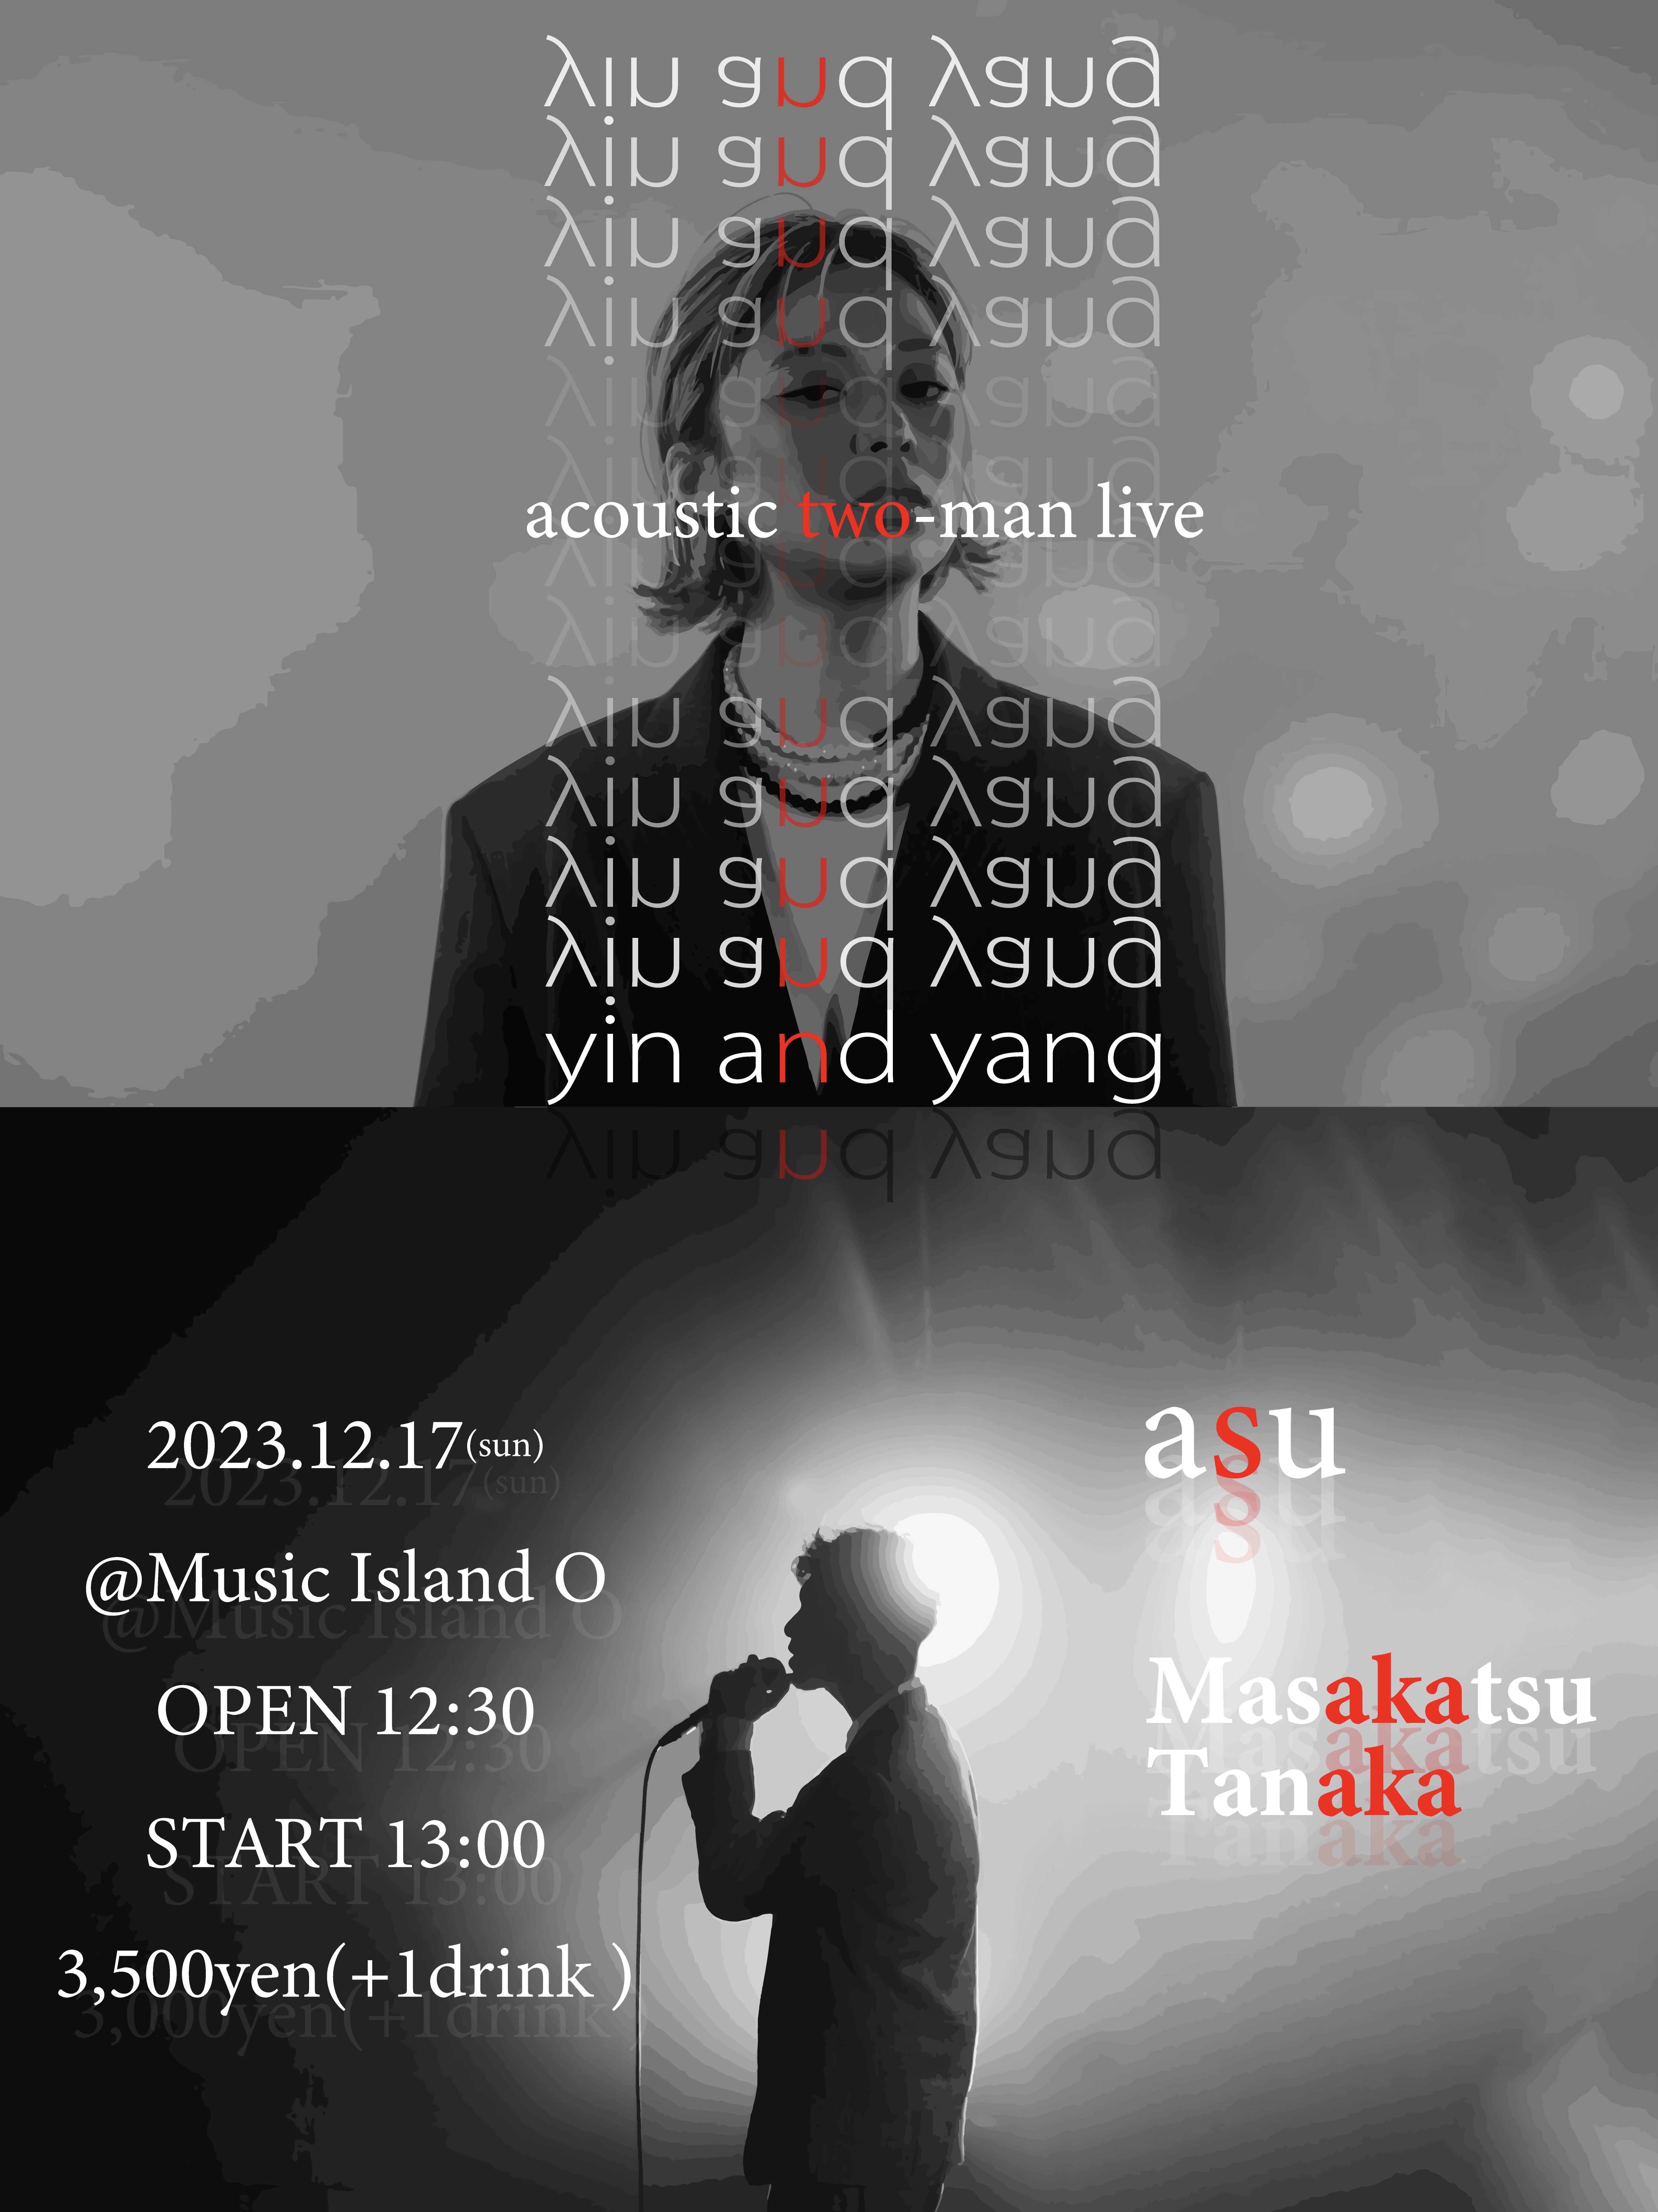 田中必勝 presents "yin and yang" acoustic two-man live【昼】